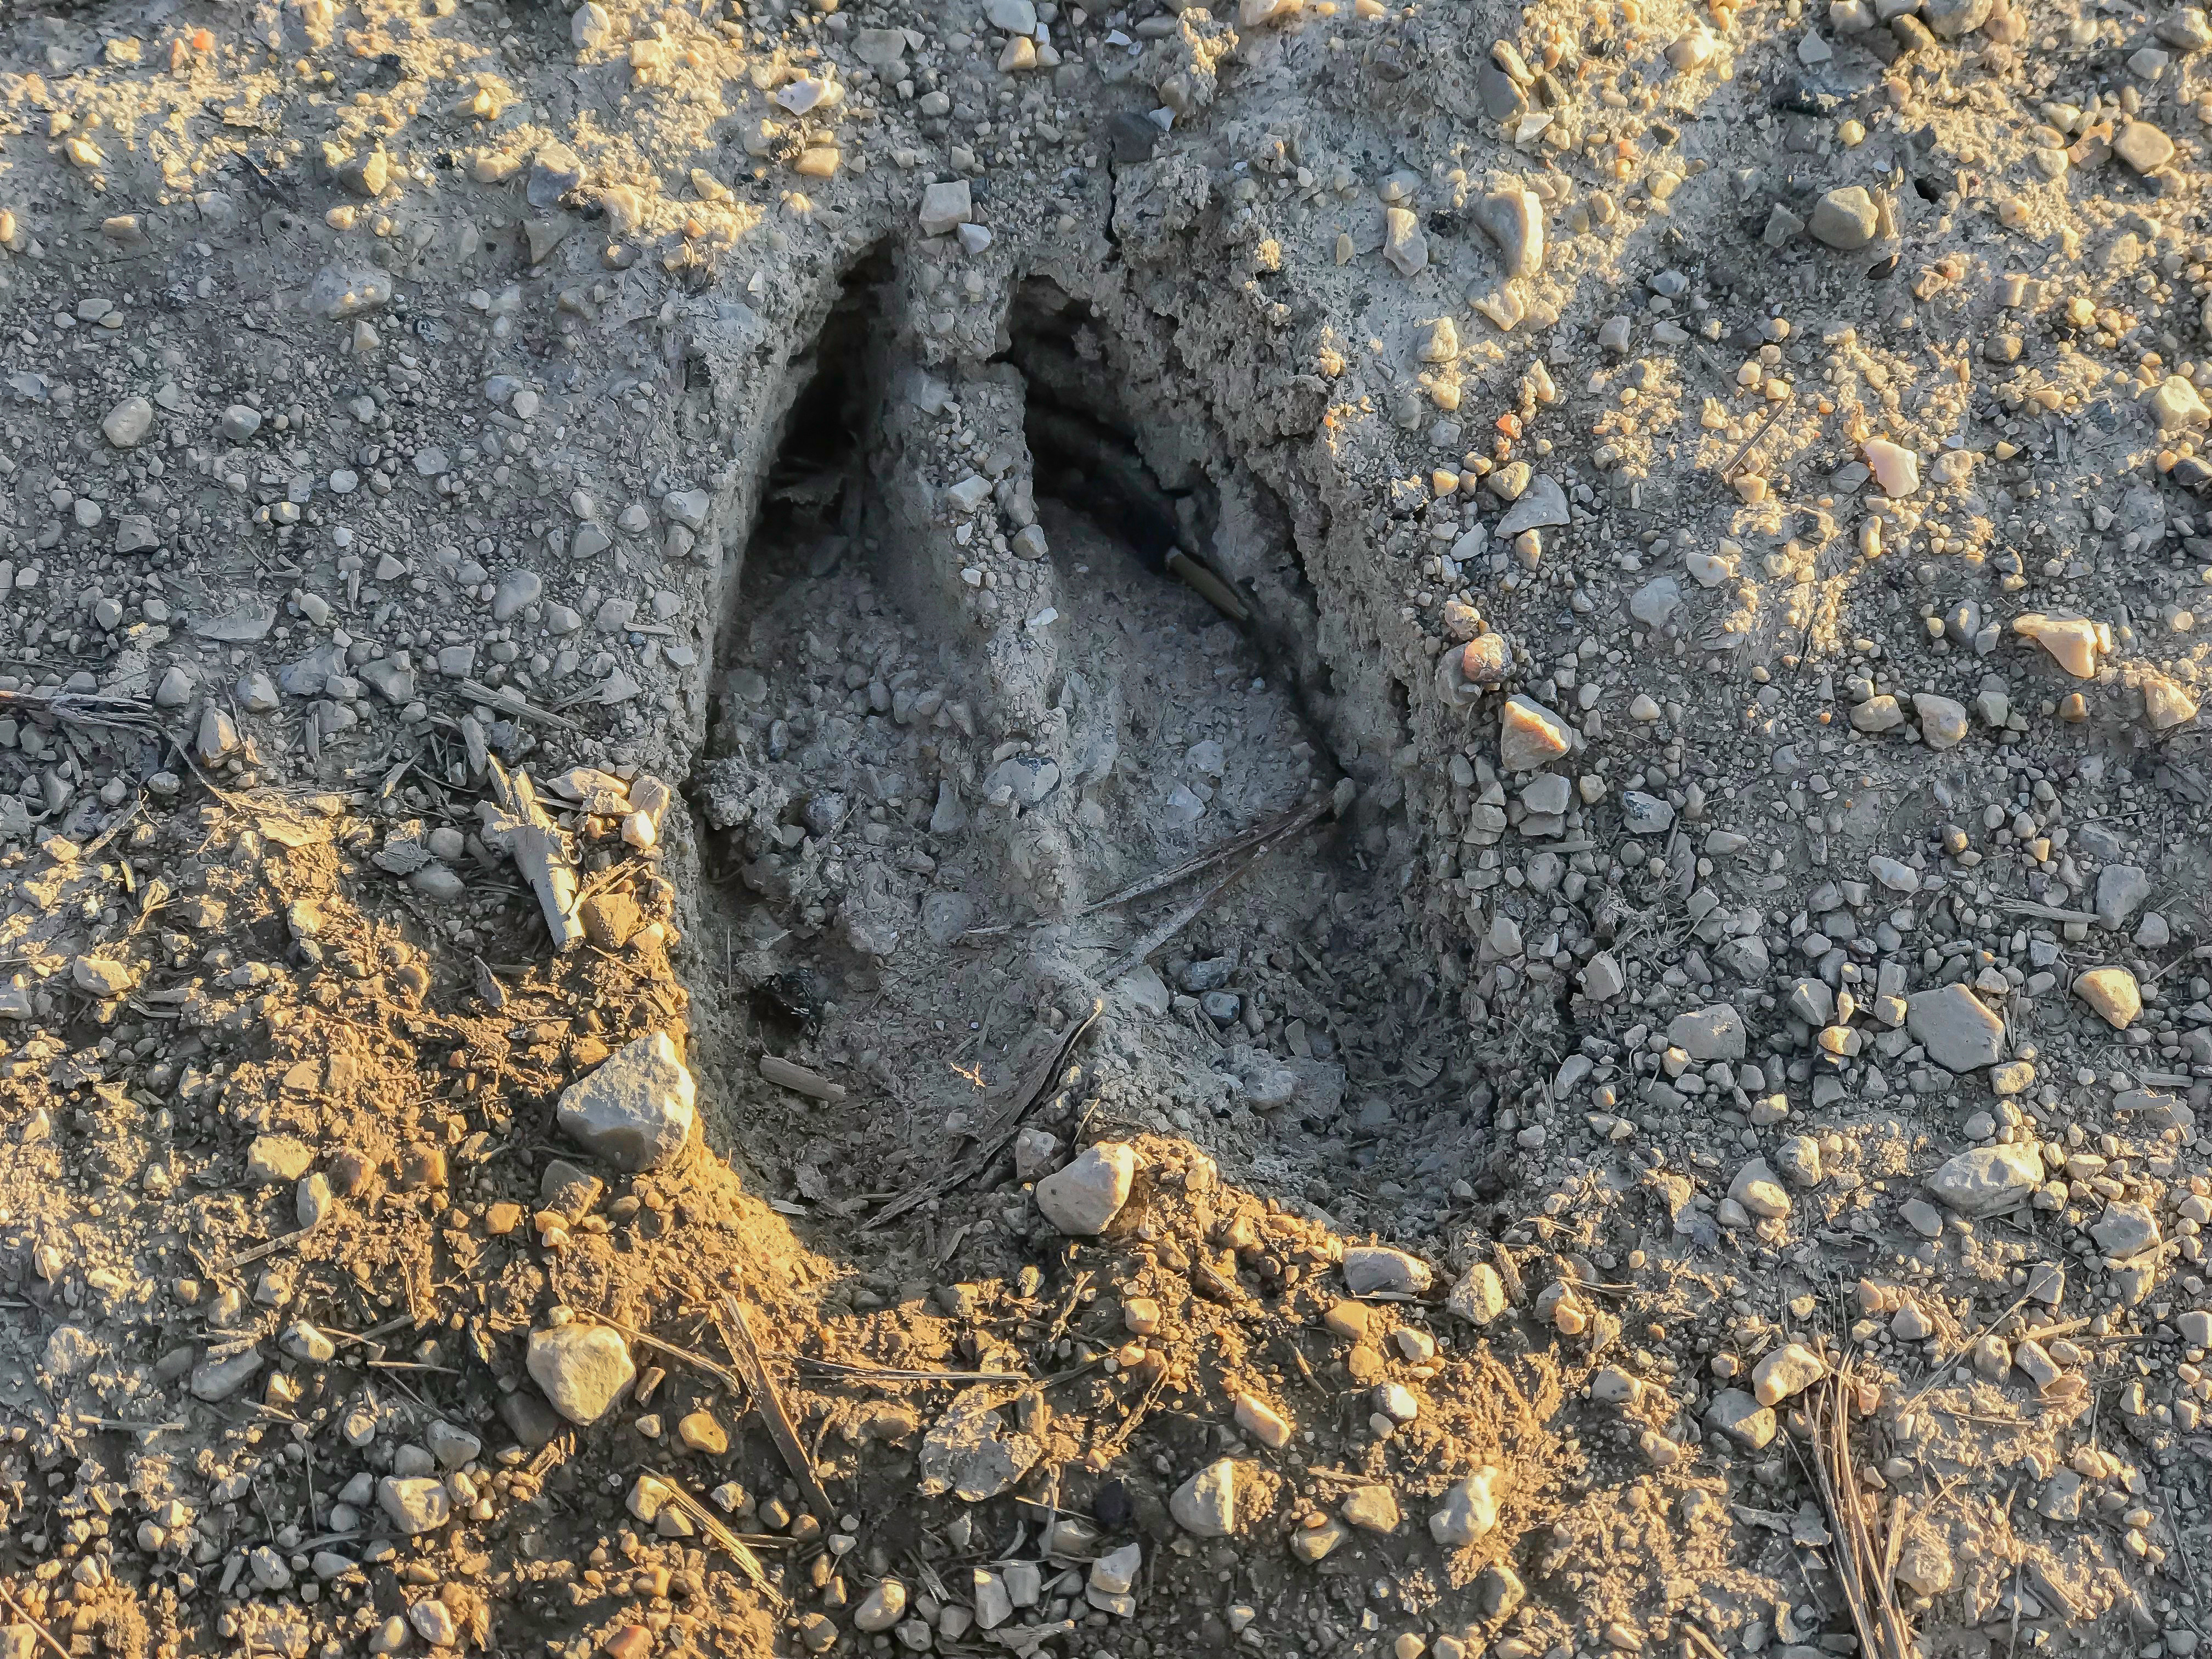 Deer's hooves make sharp, heart-shaped tracks.